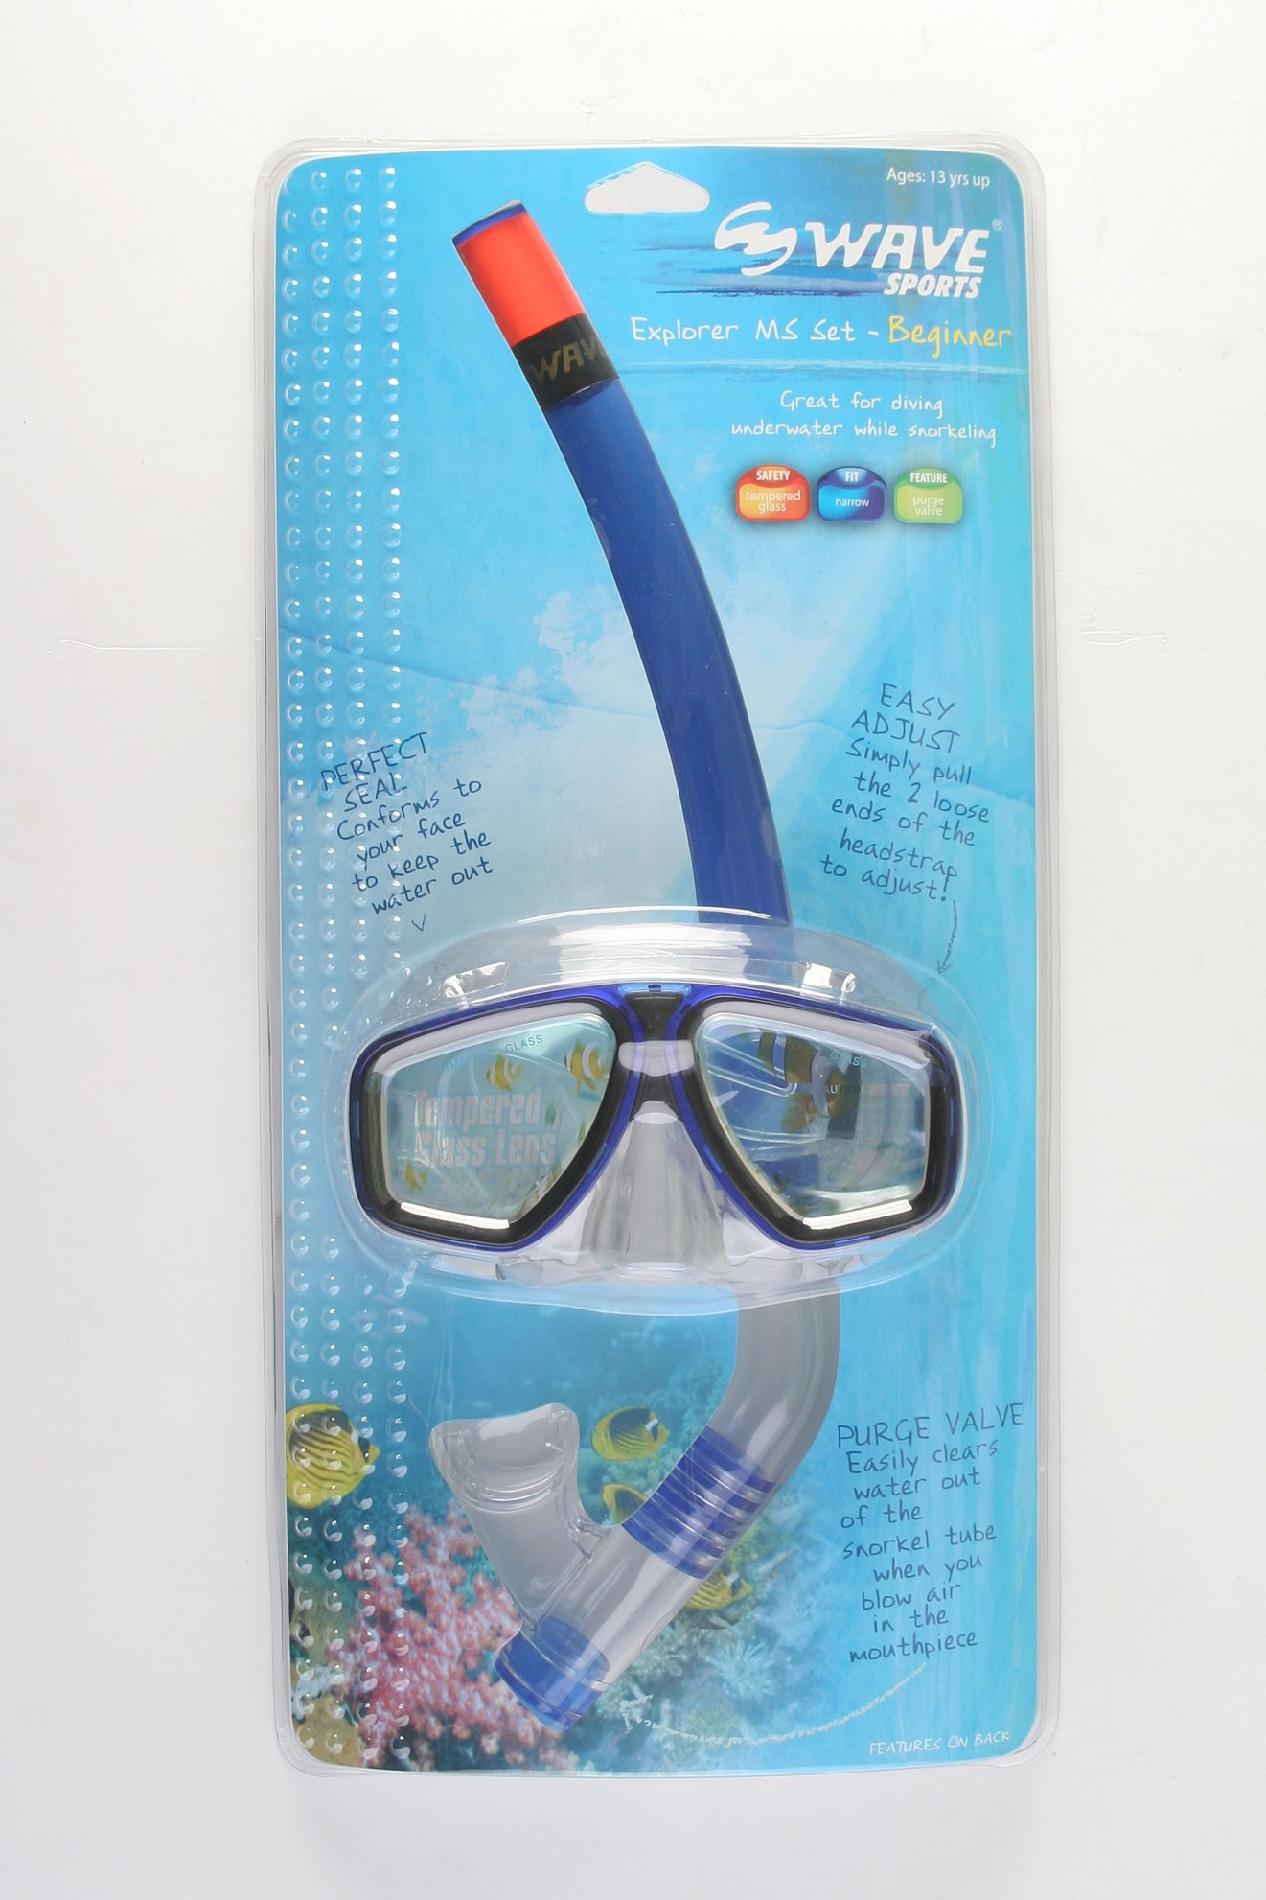 Wave sports Explorer Mask - Snorkel and Fins Set